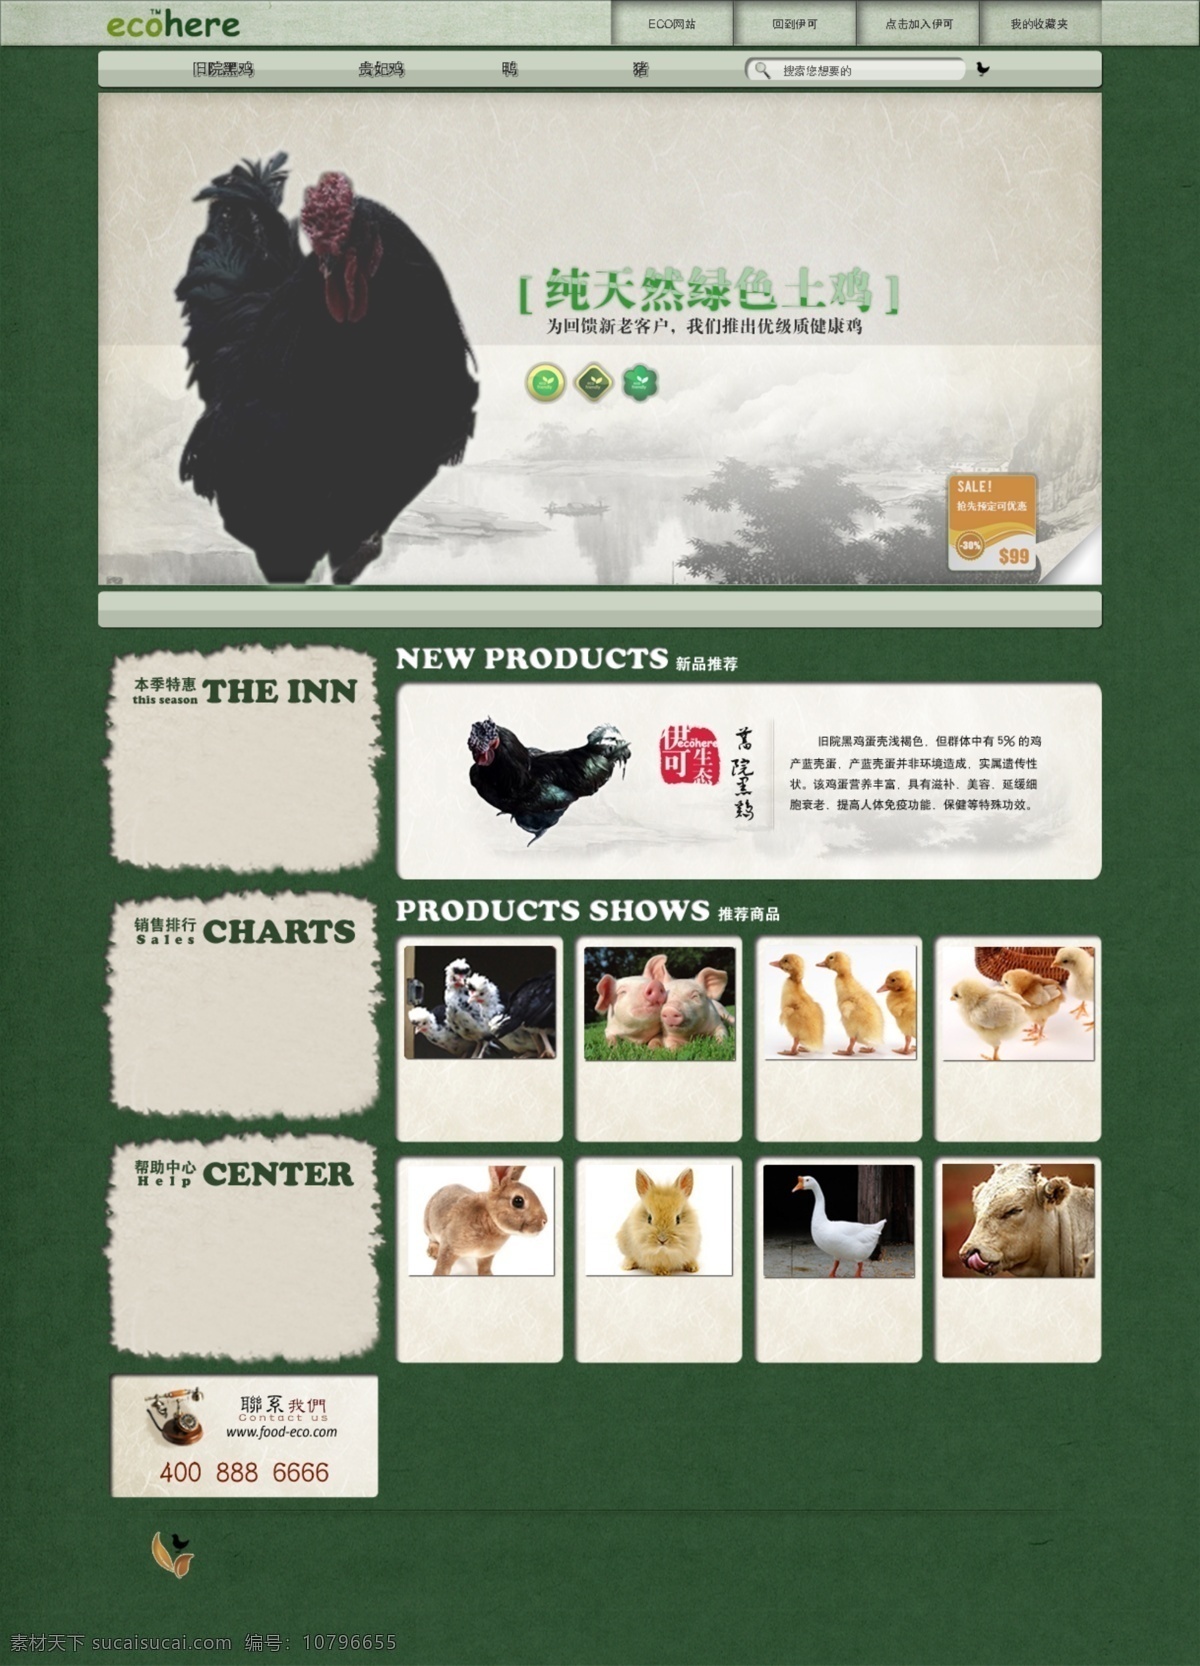 广告 模版 农业 生态 土鸡 推广 网页 网页模板 网站设计 模板下载 生态网站设计 网站 首页 中文模板 源文件 网页素材